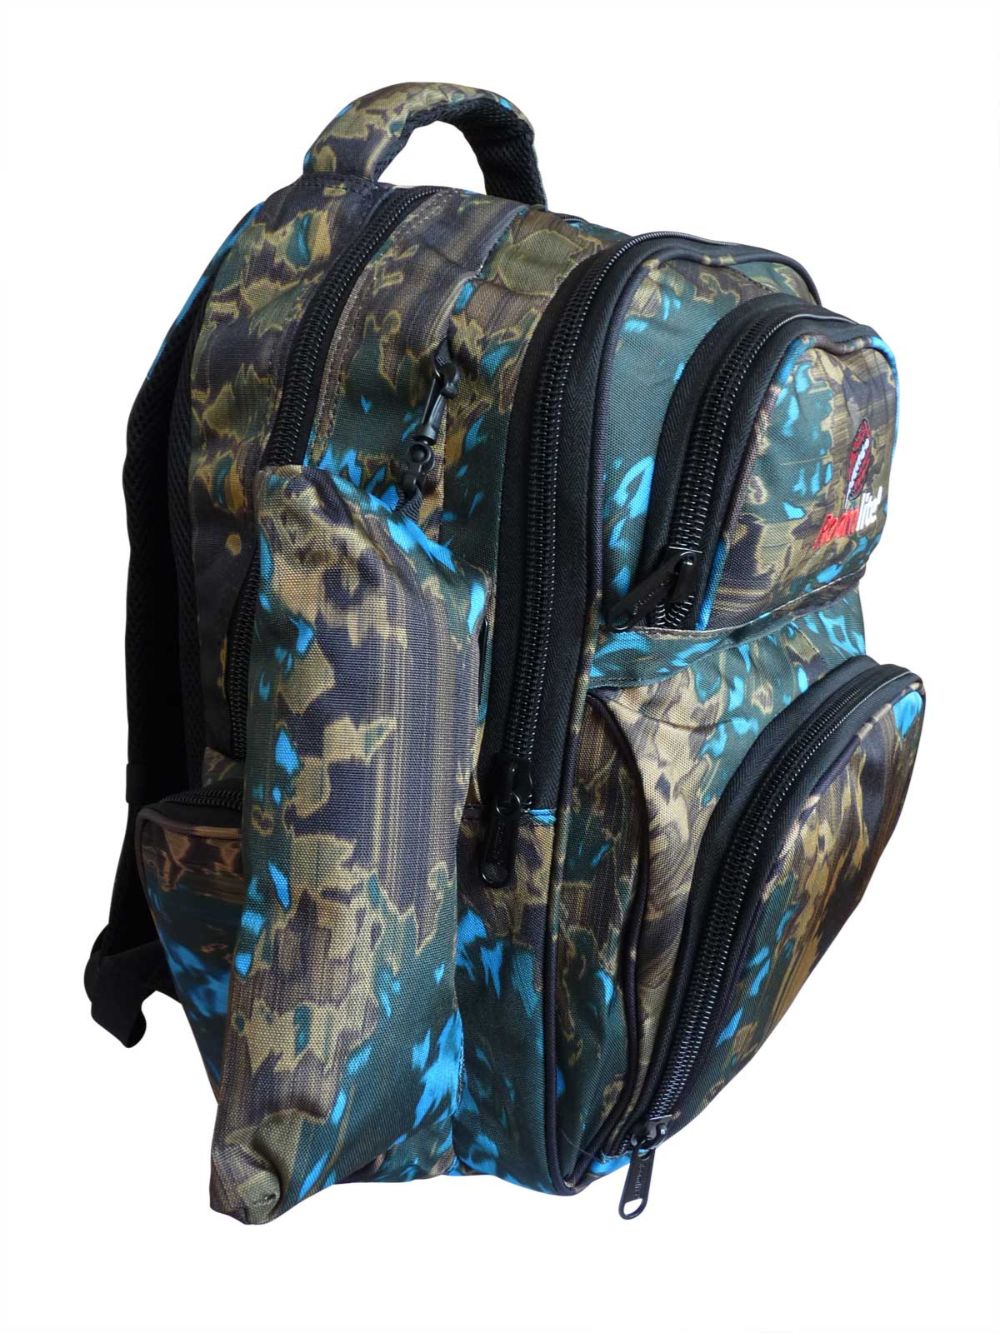 Roamlite Childrens Backpack Green Blue Funky Water pattern RL838 top